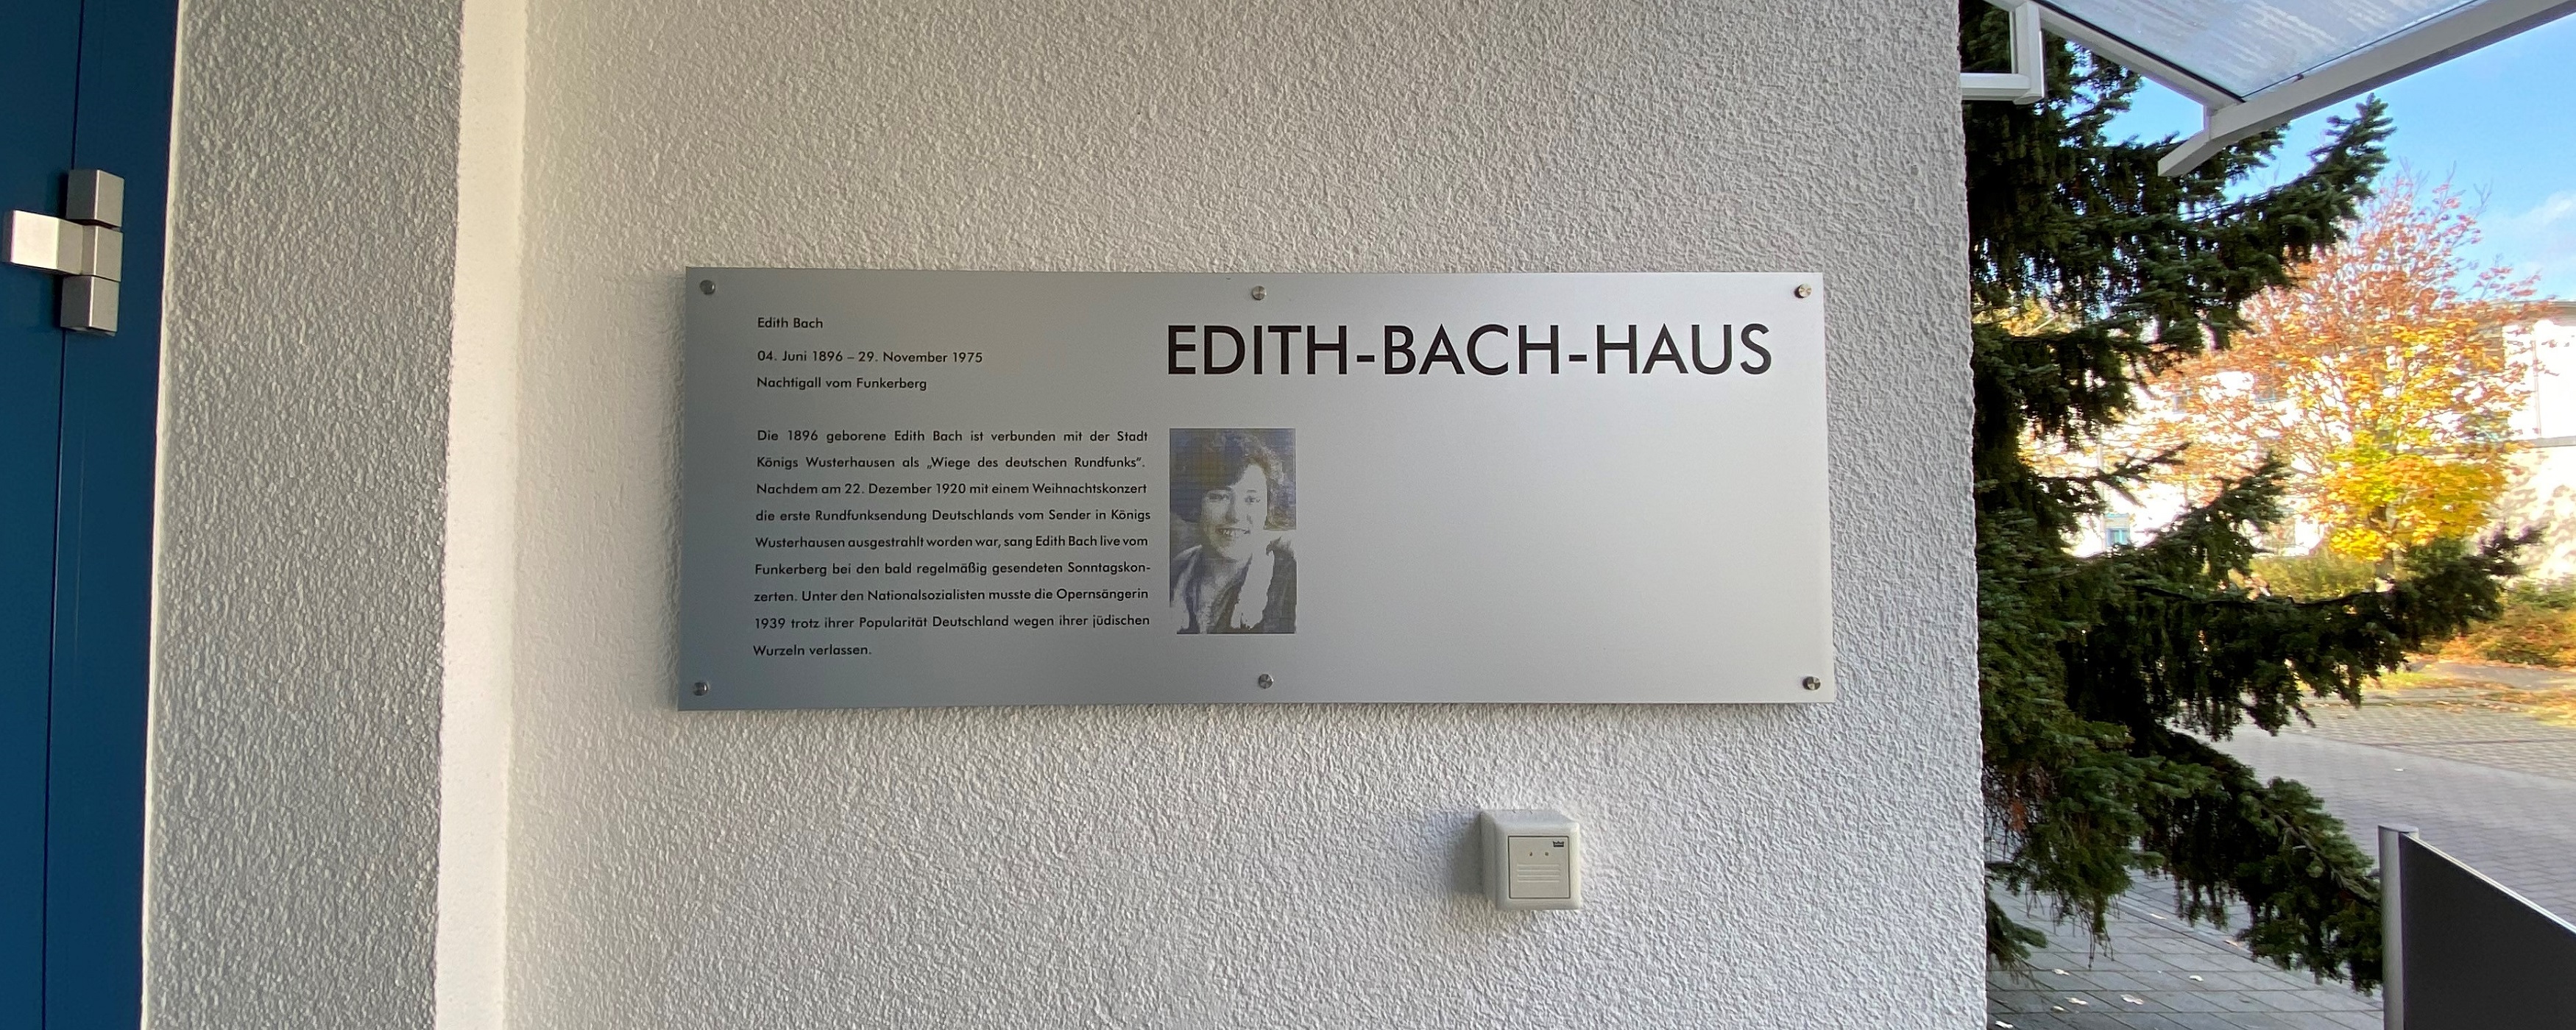 Das Bild zeigt das Schild über Edith-Bach.